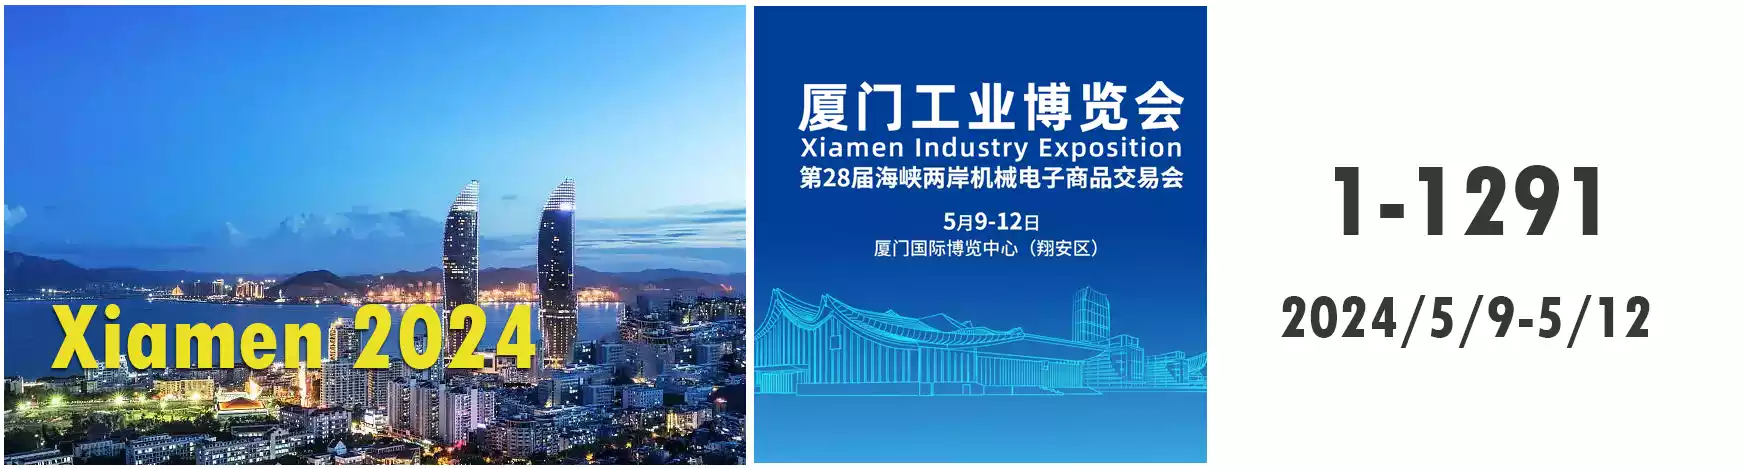 2024 Xiamen Exhibition Information